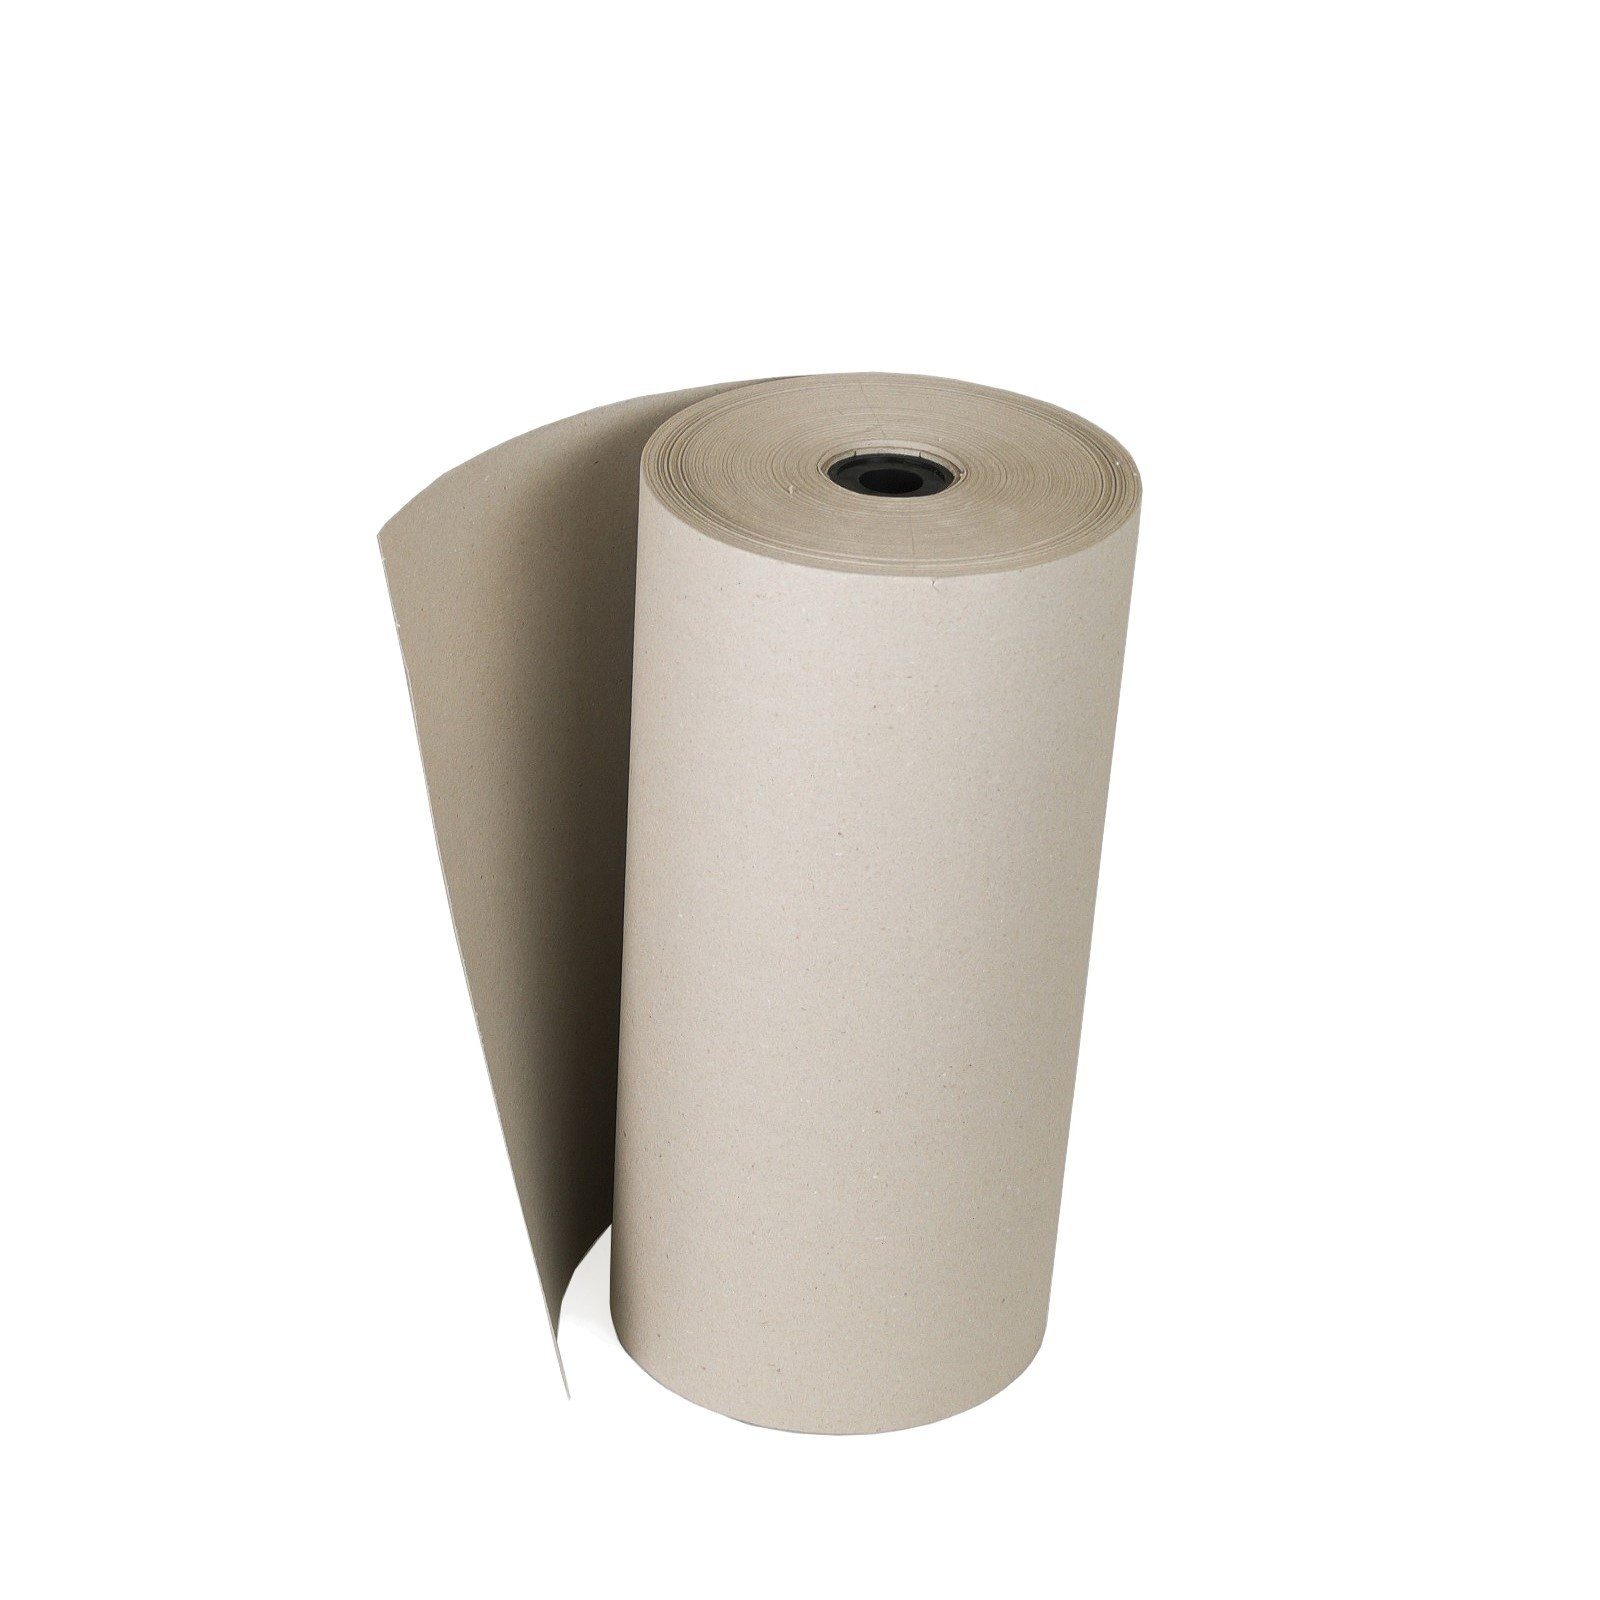 100g/m² Packpapier Füllmaterial 0,5x Rollen-Schrenzpapier Verpackungen Grau Seidenpapier, KK 200m